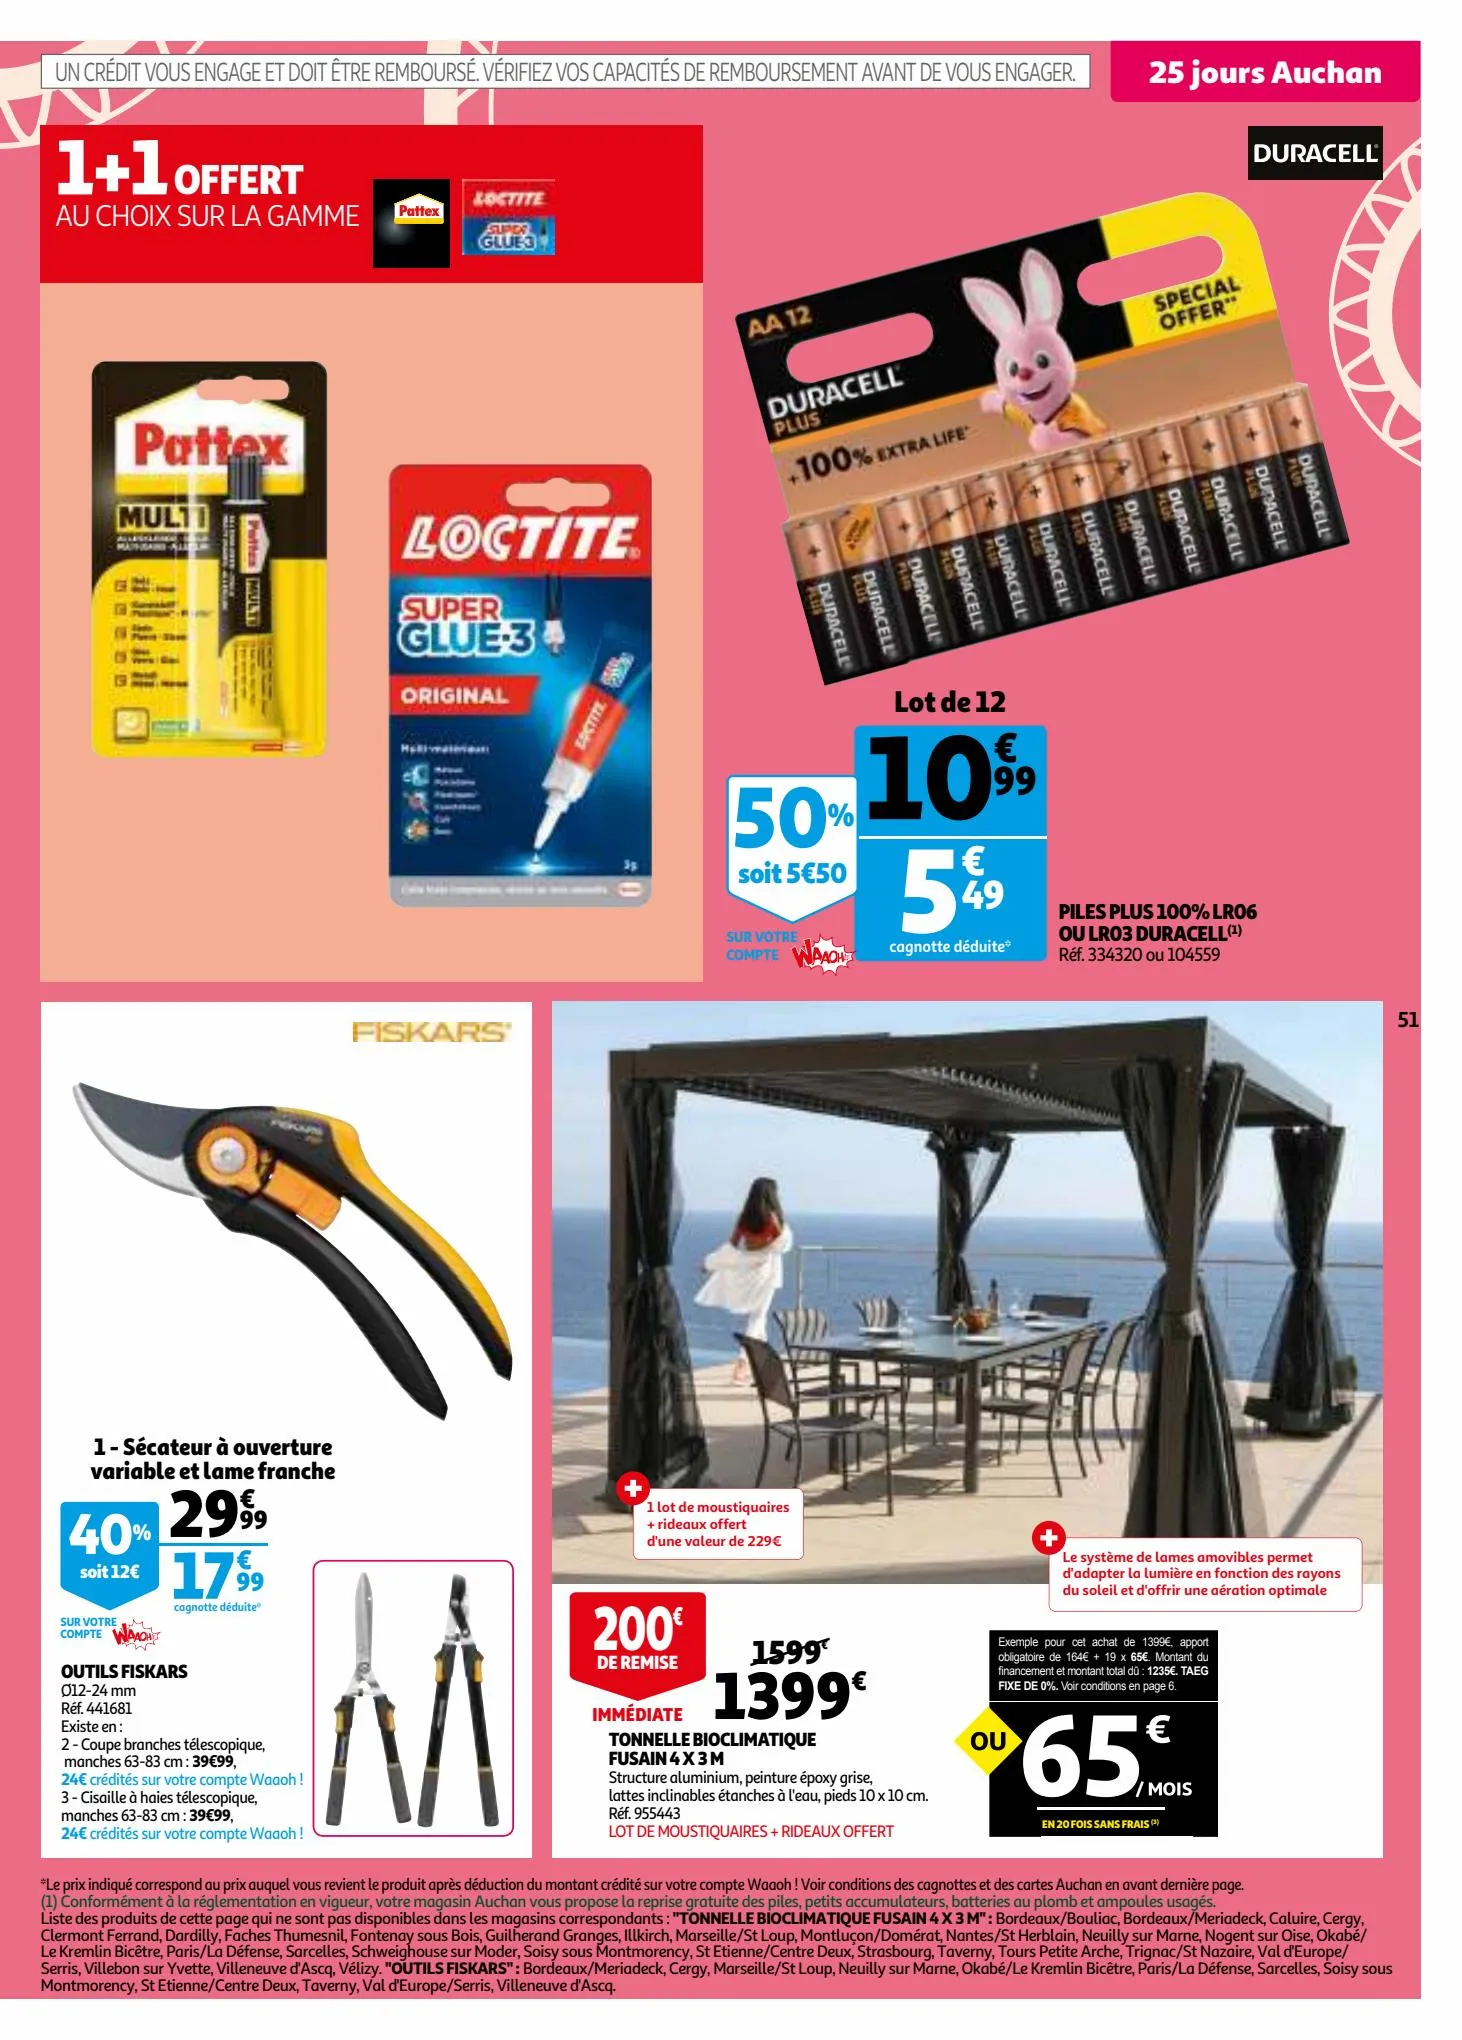 Catalogue 25 jours Auchan, page 00051